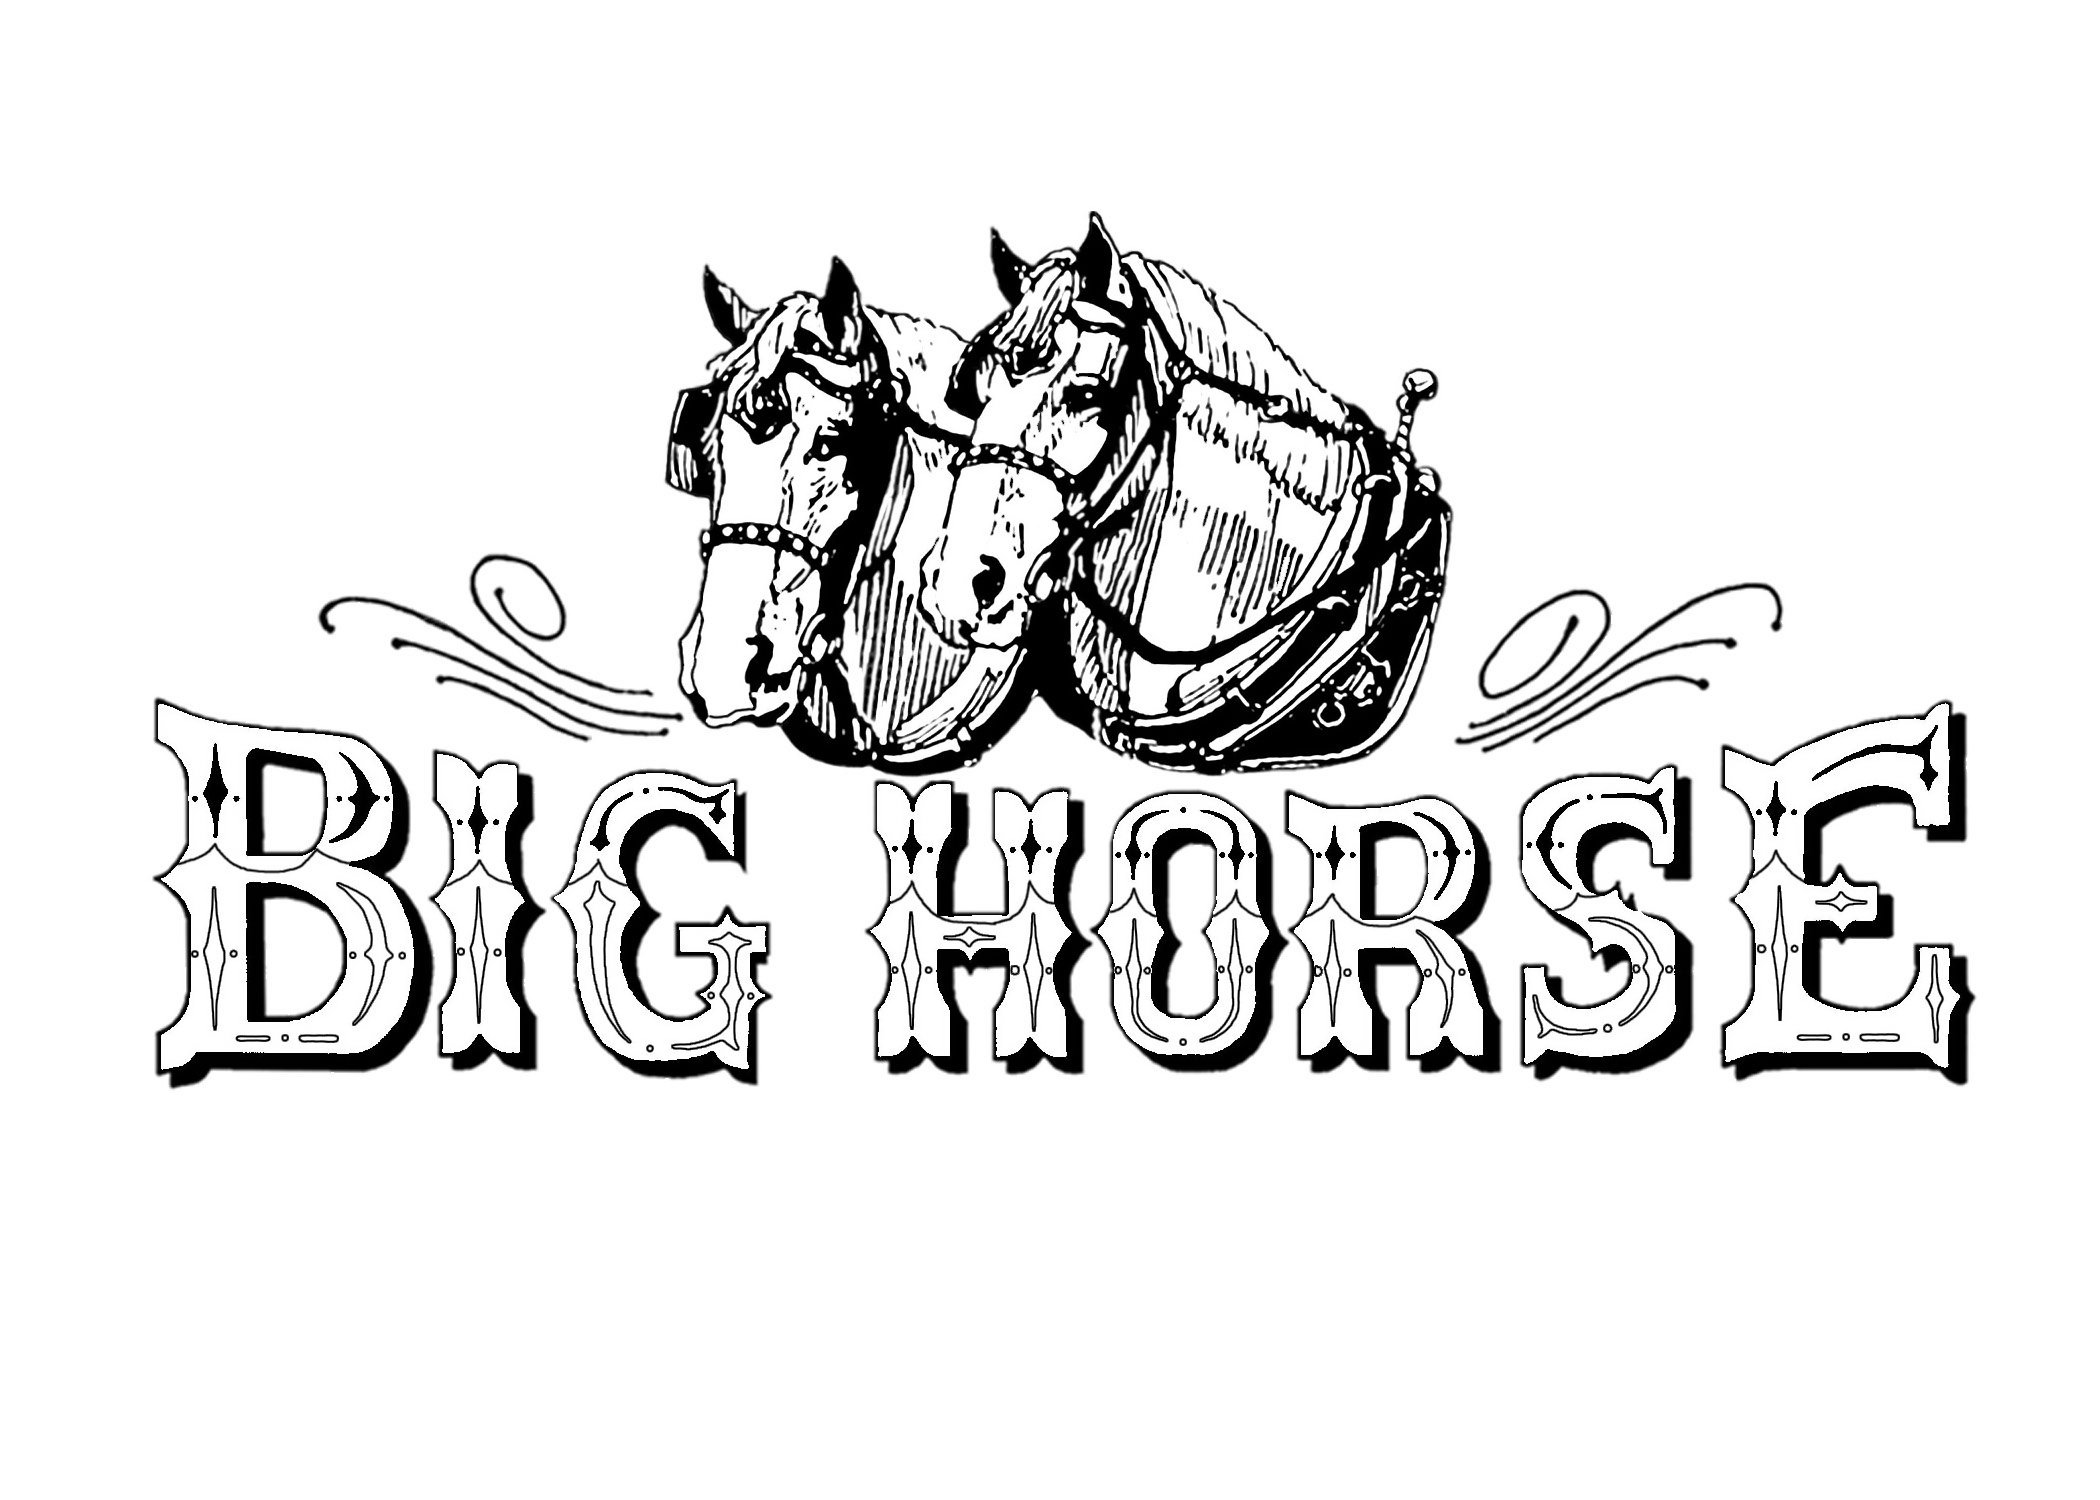 BIG HORSE